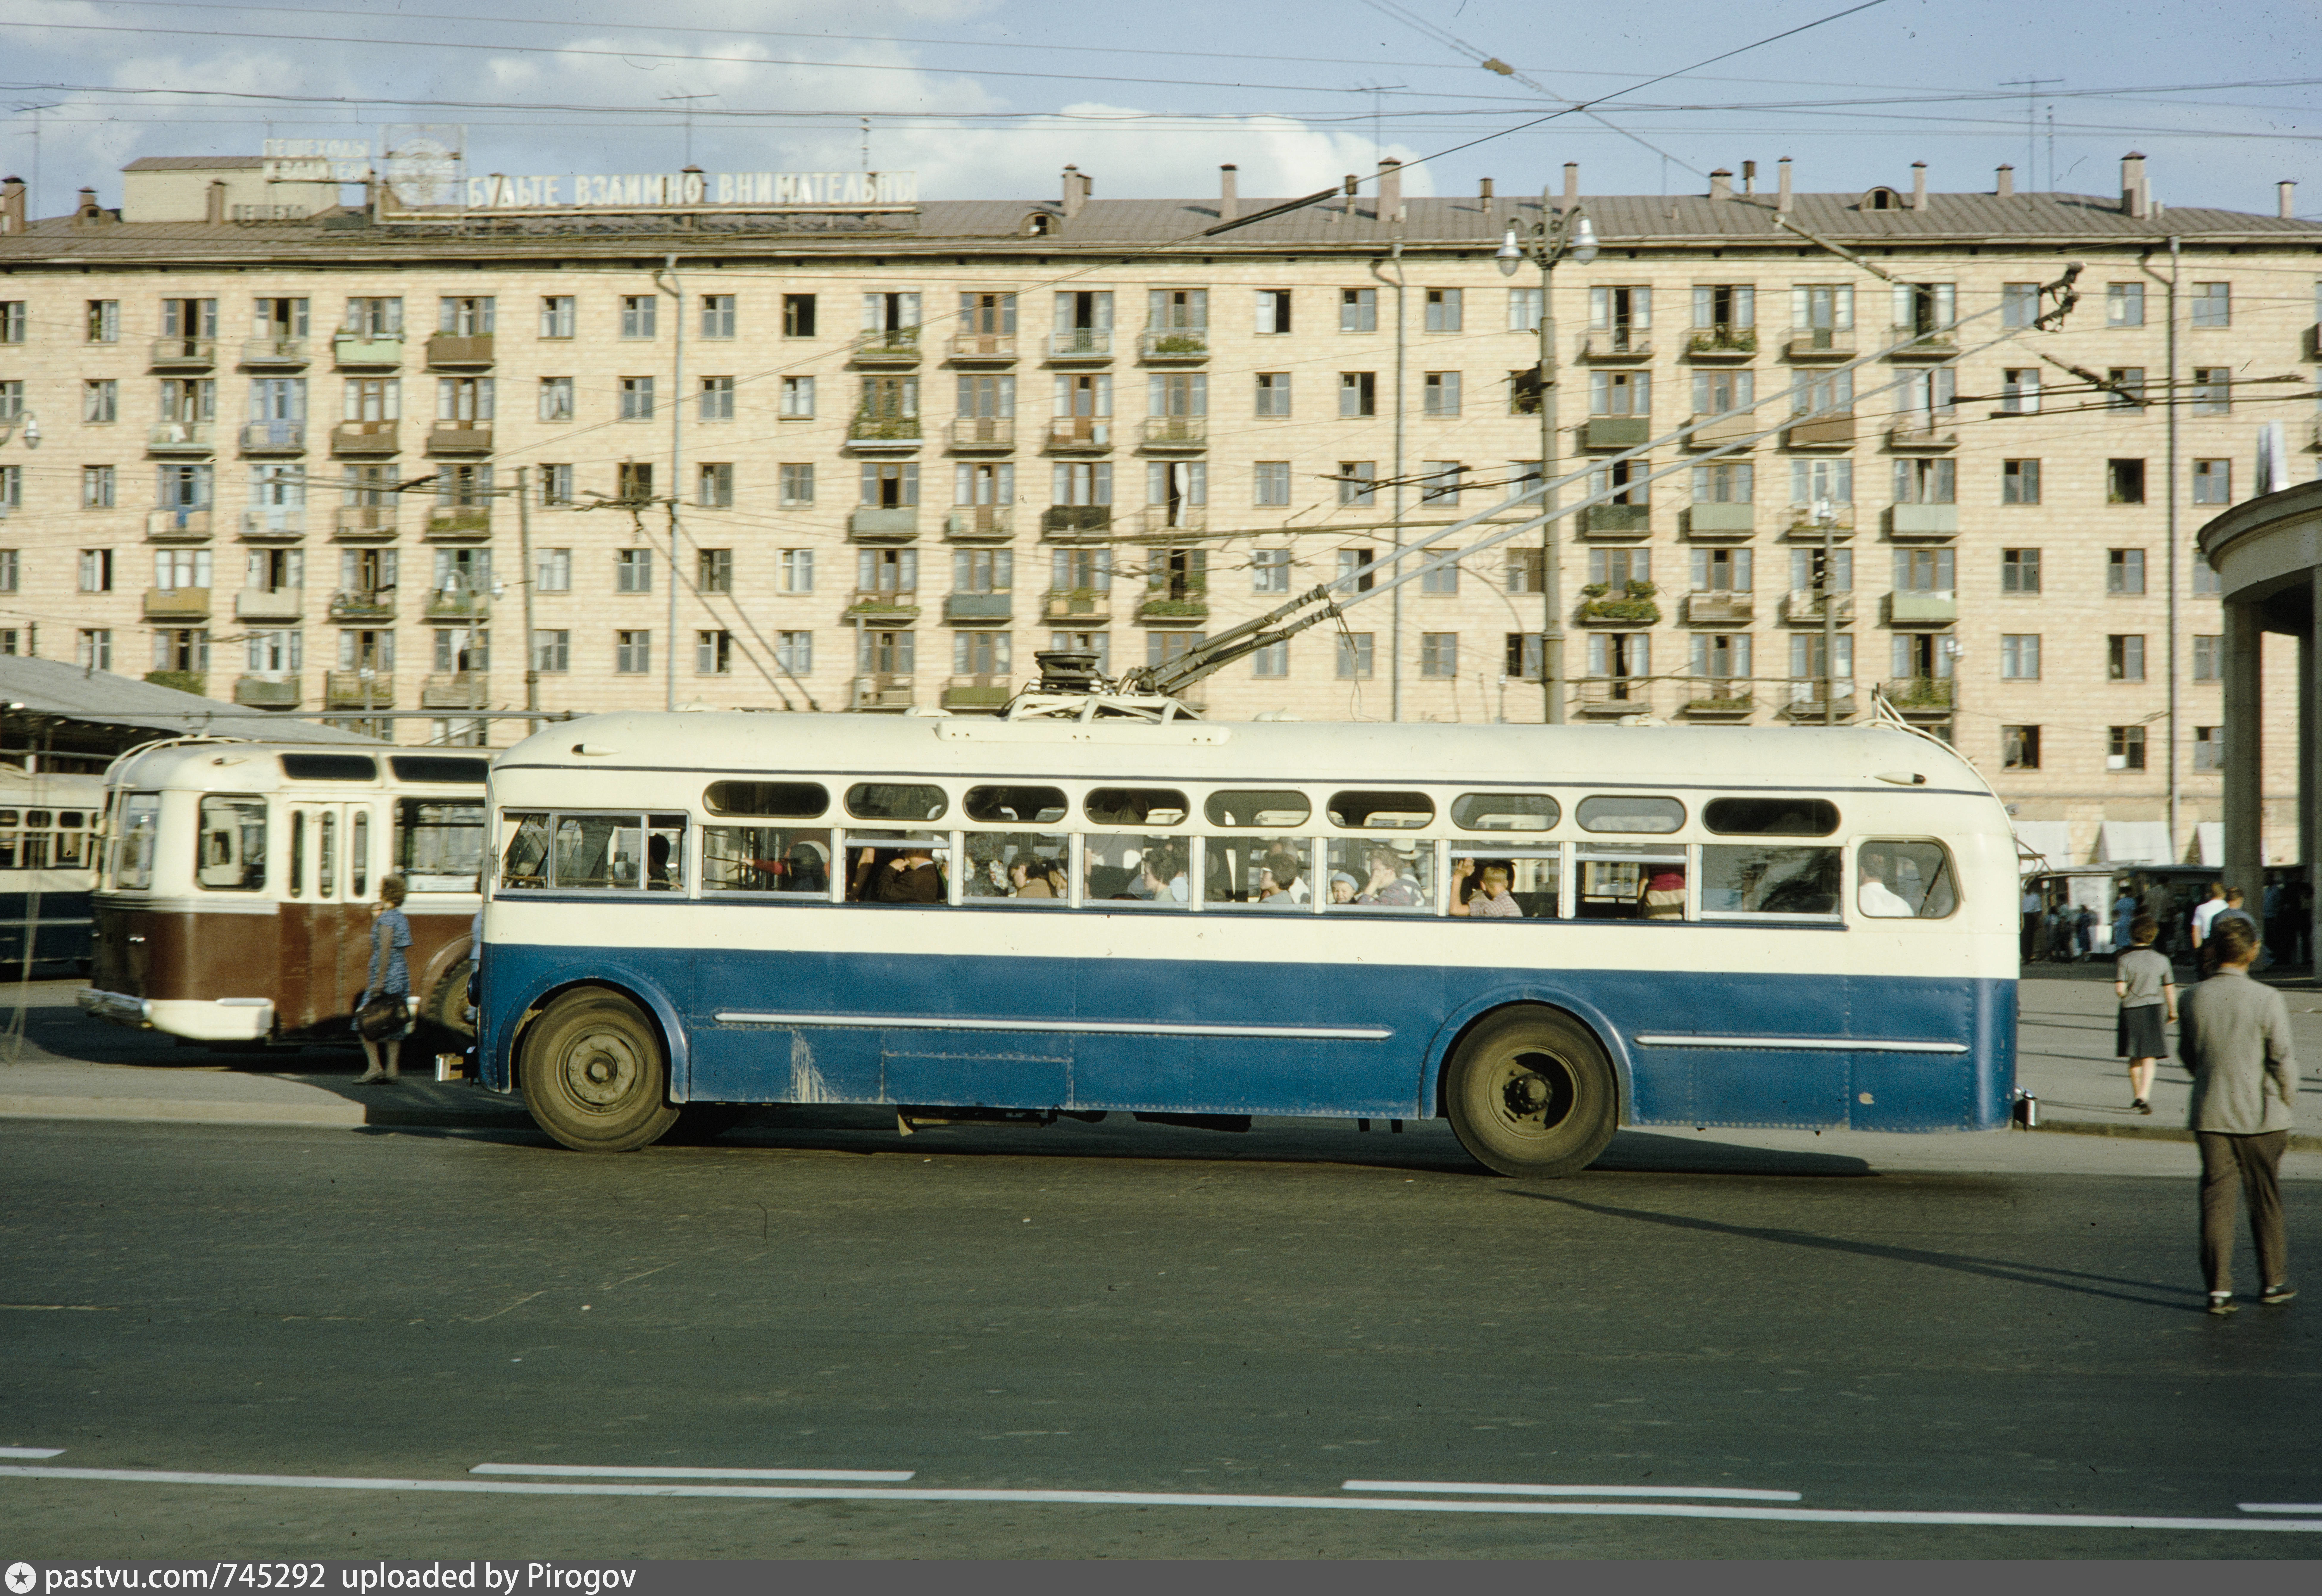 Т д 82. МТБ-82 троллейбус. МТБ-82 троллейбус в Москве. МТБ-82 ВСХВ. Ленинский проспект МТБ-82.